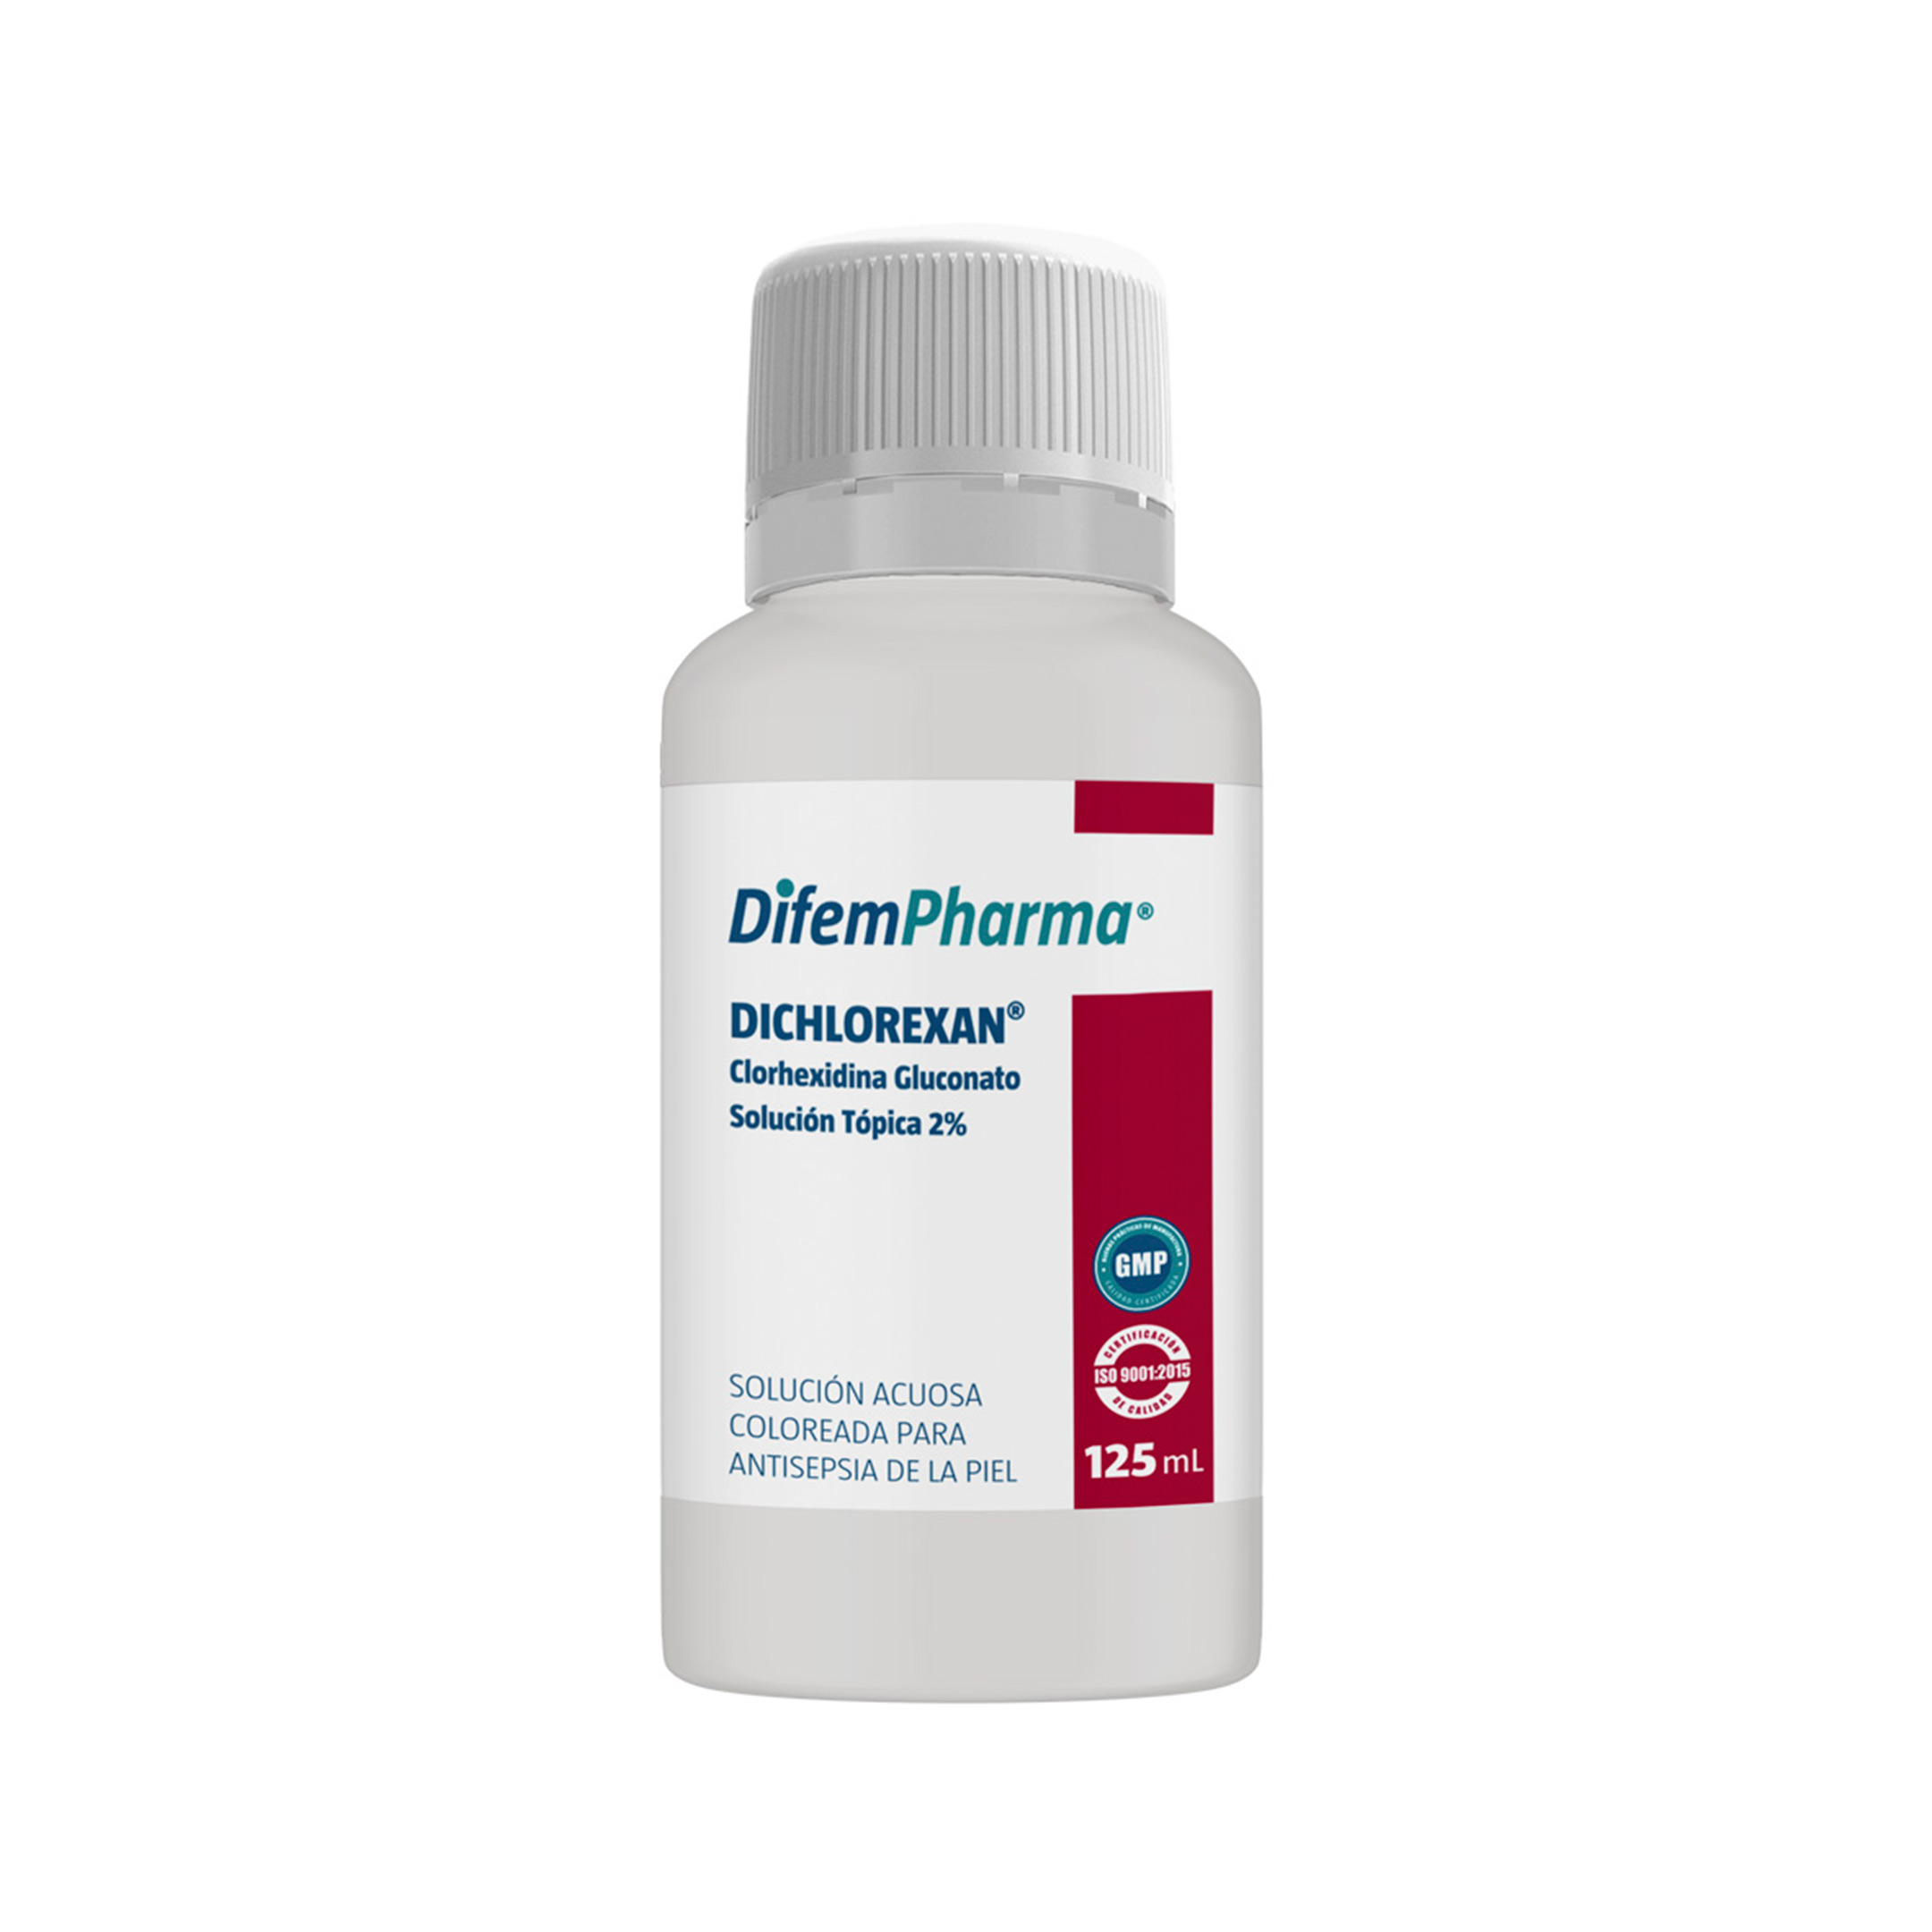 Dichlorexan Solución Coloreada 2% es un potente antiséptico de alta acción antimicrobiana. Formulado con colorantes naturales. Libre de alcohol e hipoalergénico.